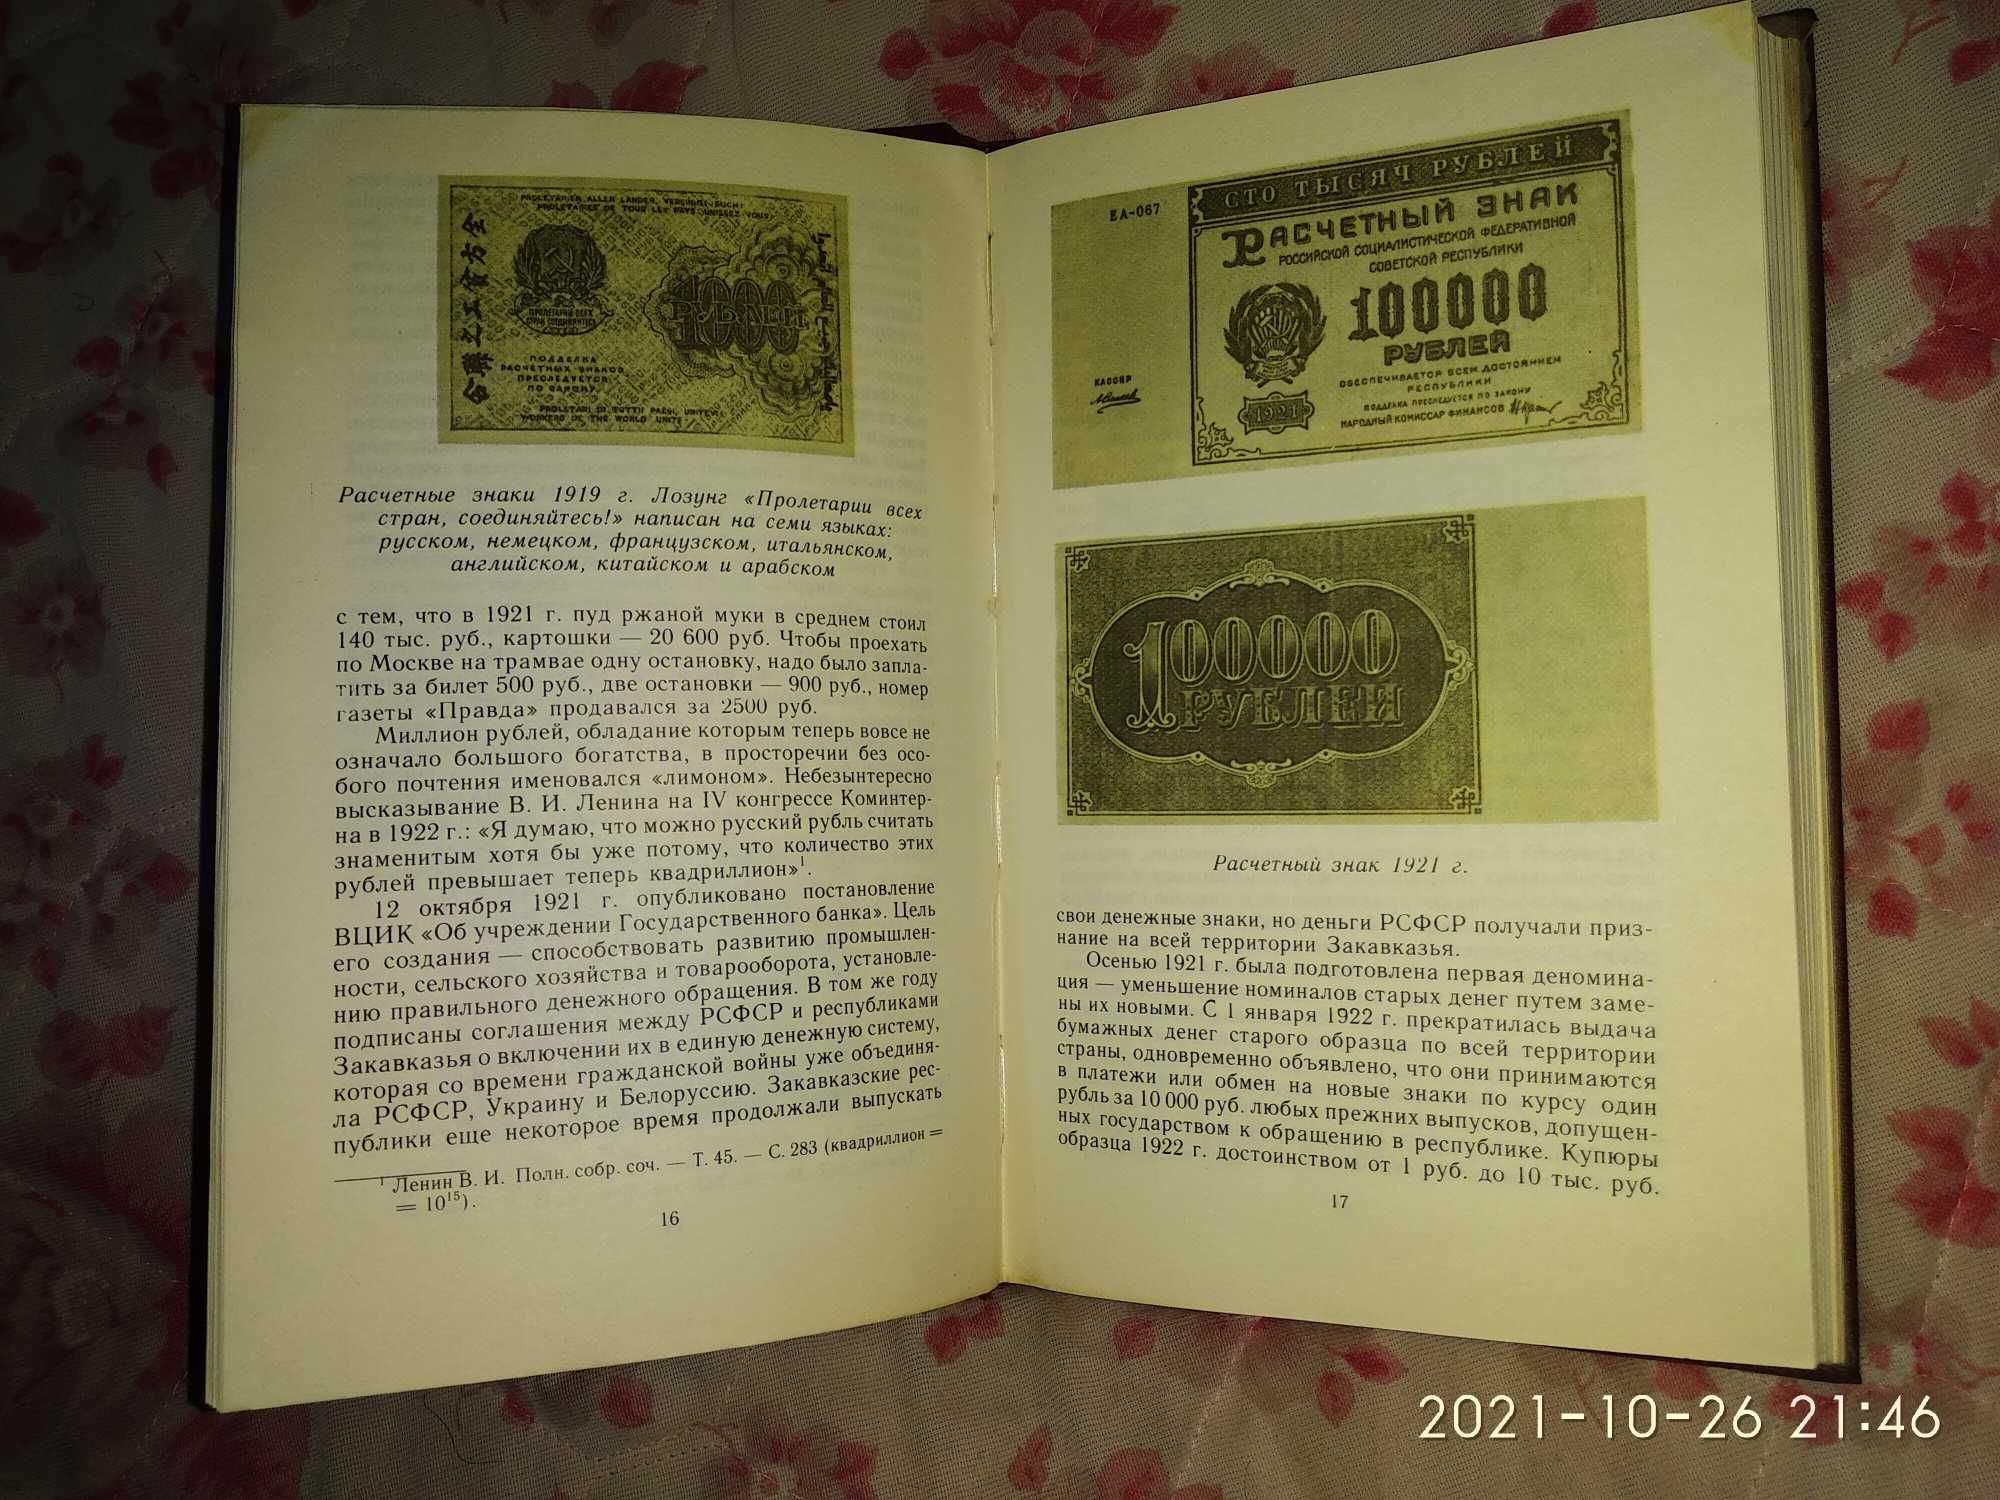 Справочник Монеты СССР, автор А.Щелоков, финансы Москва 1989